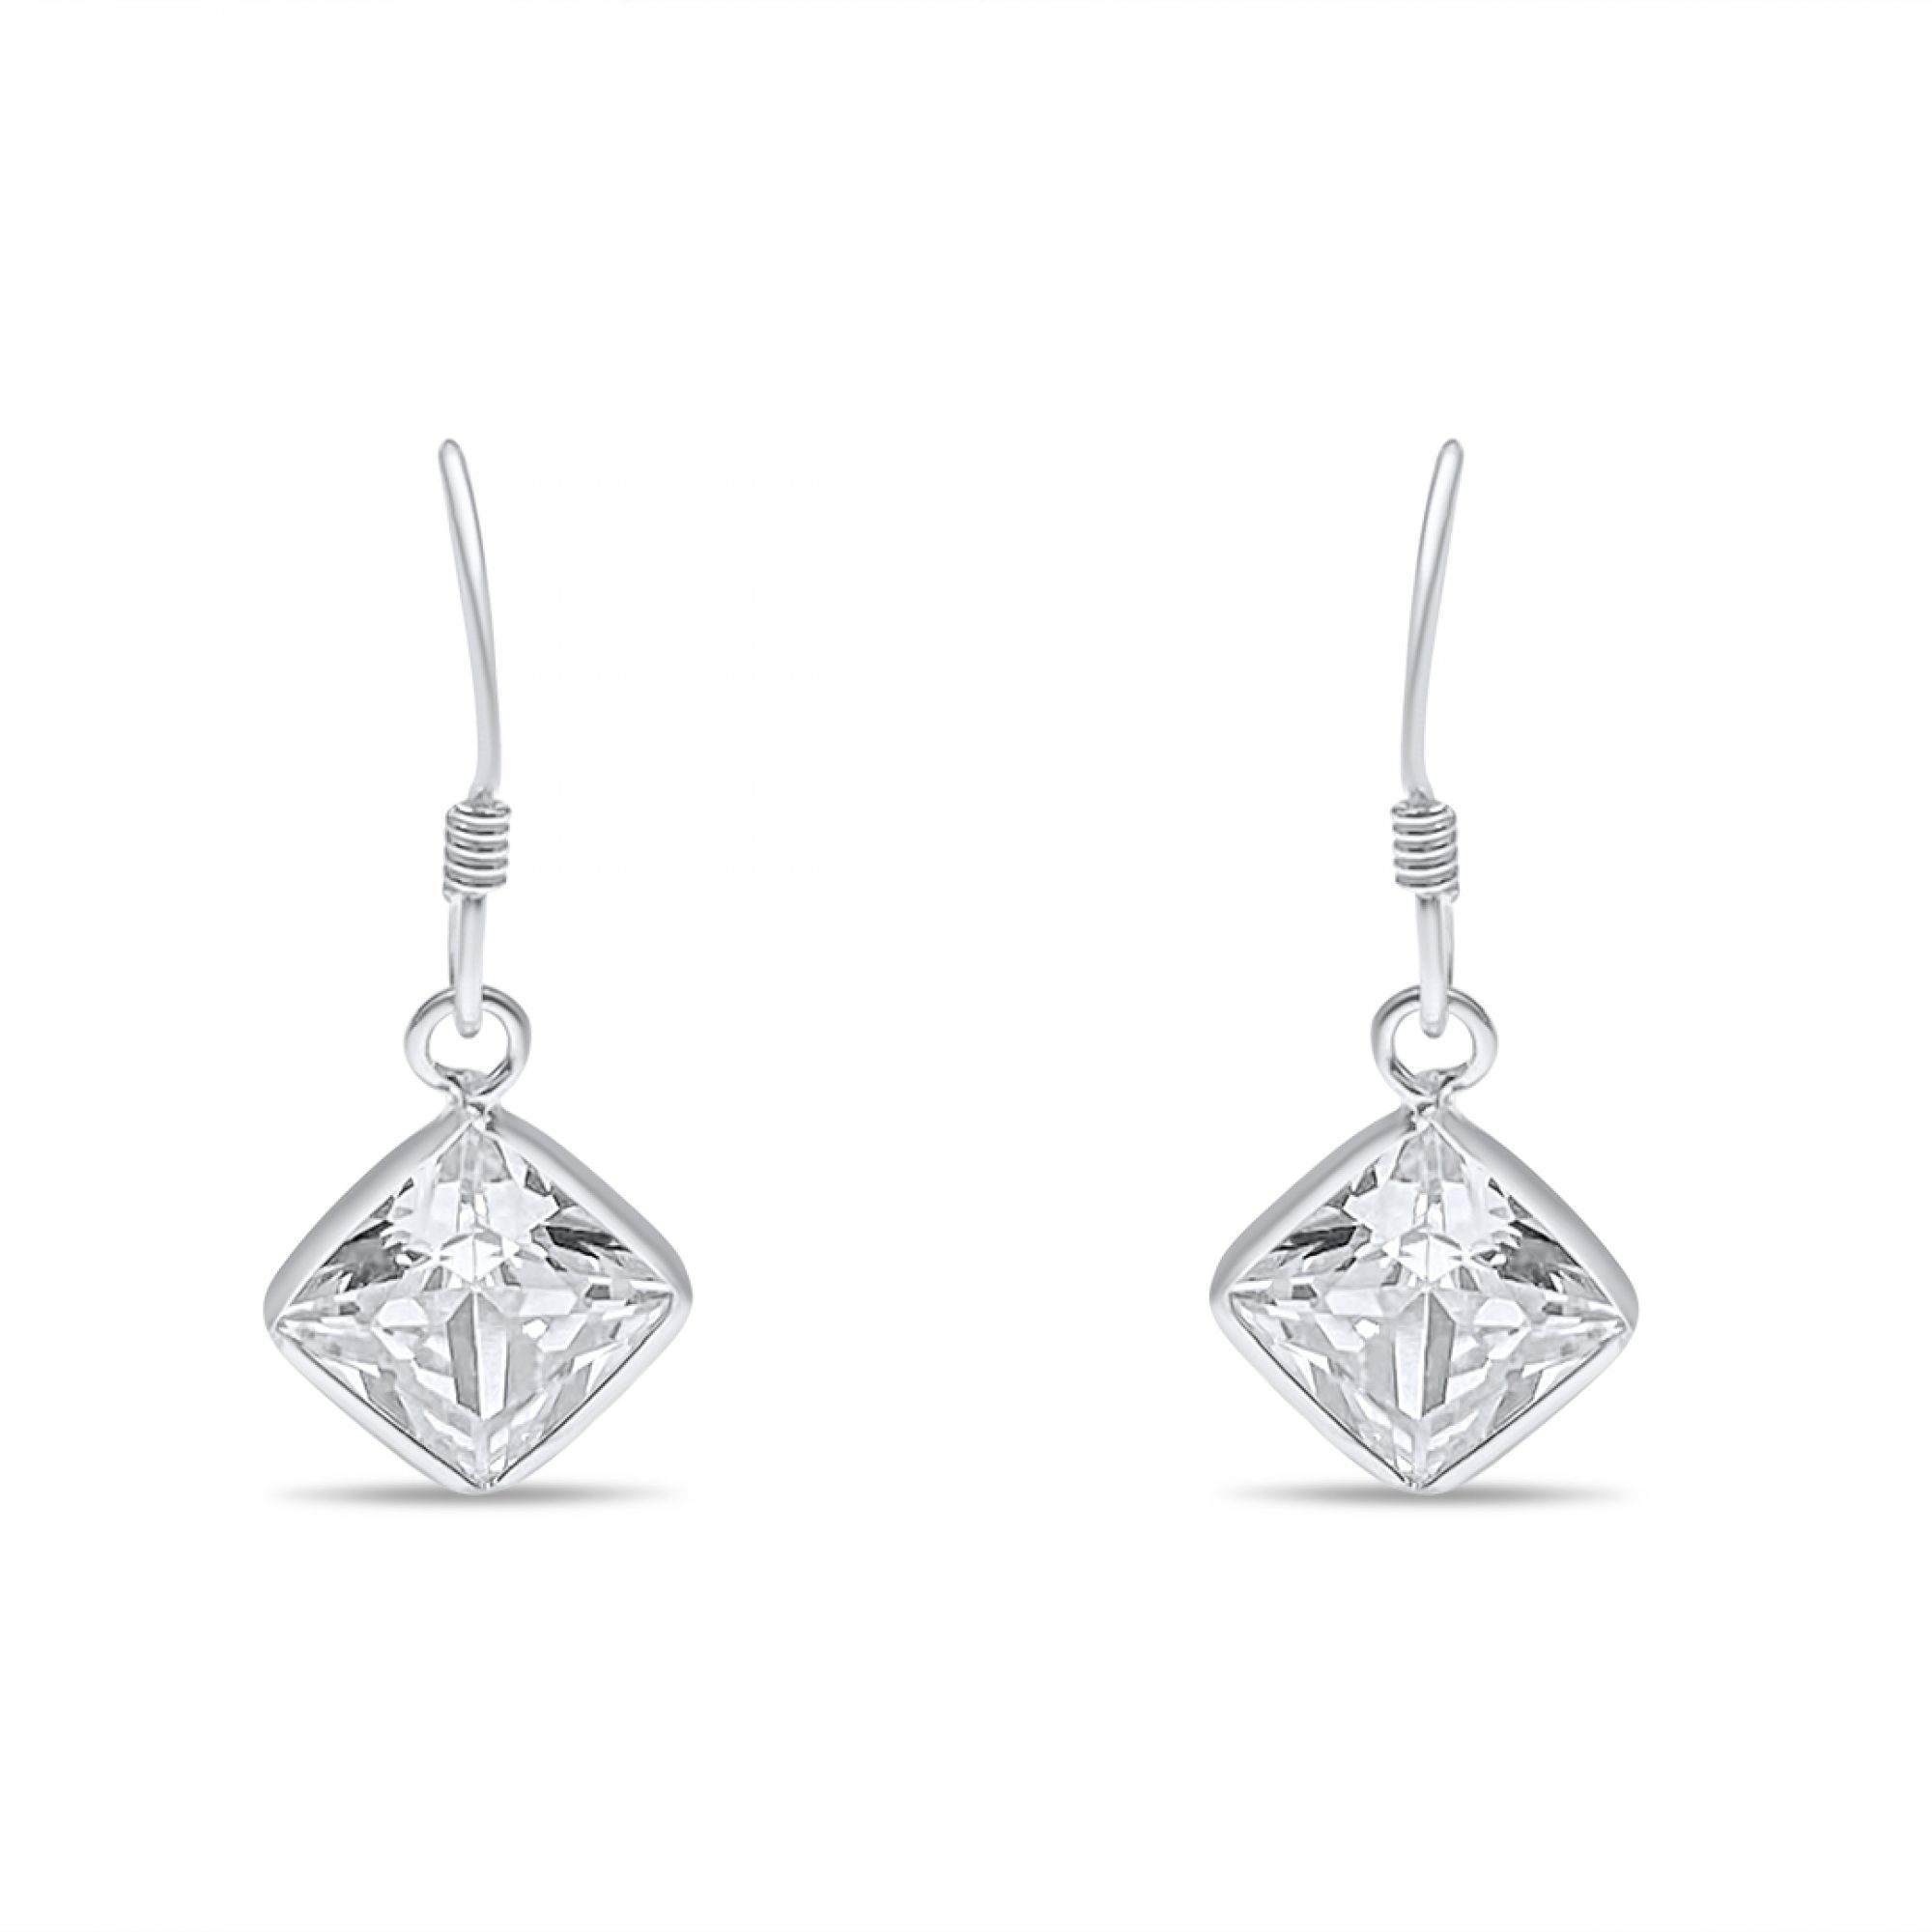 Silver dangle earrings with zircon stone